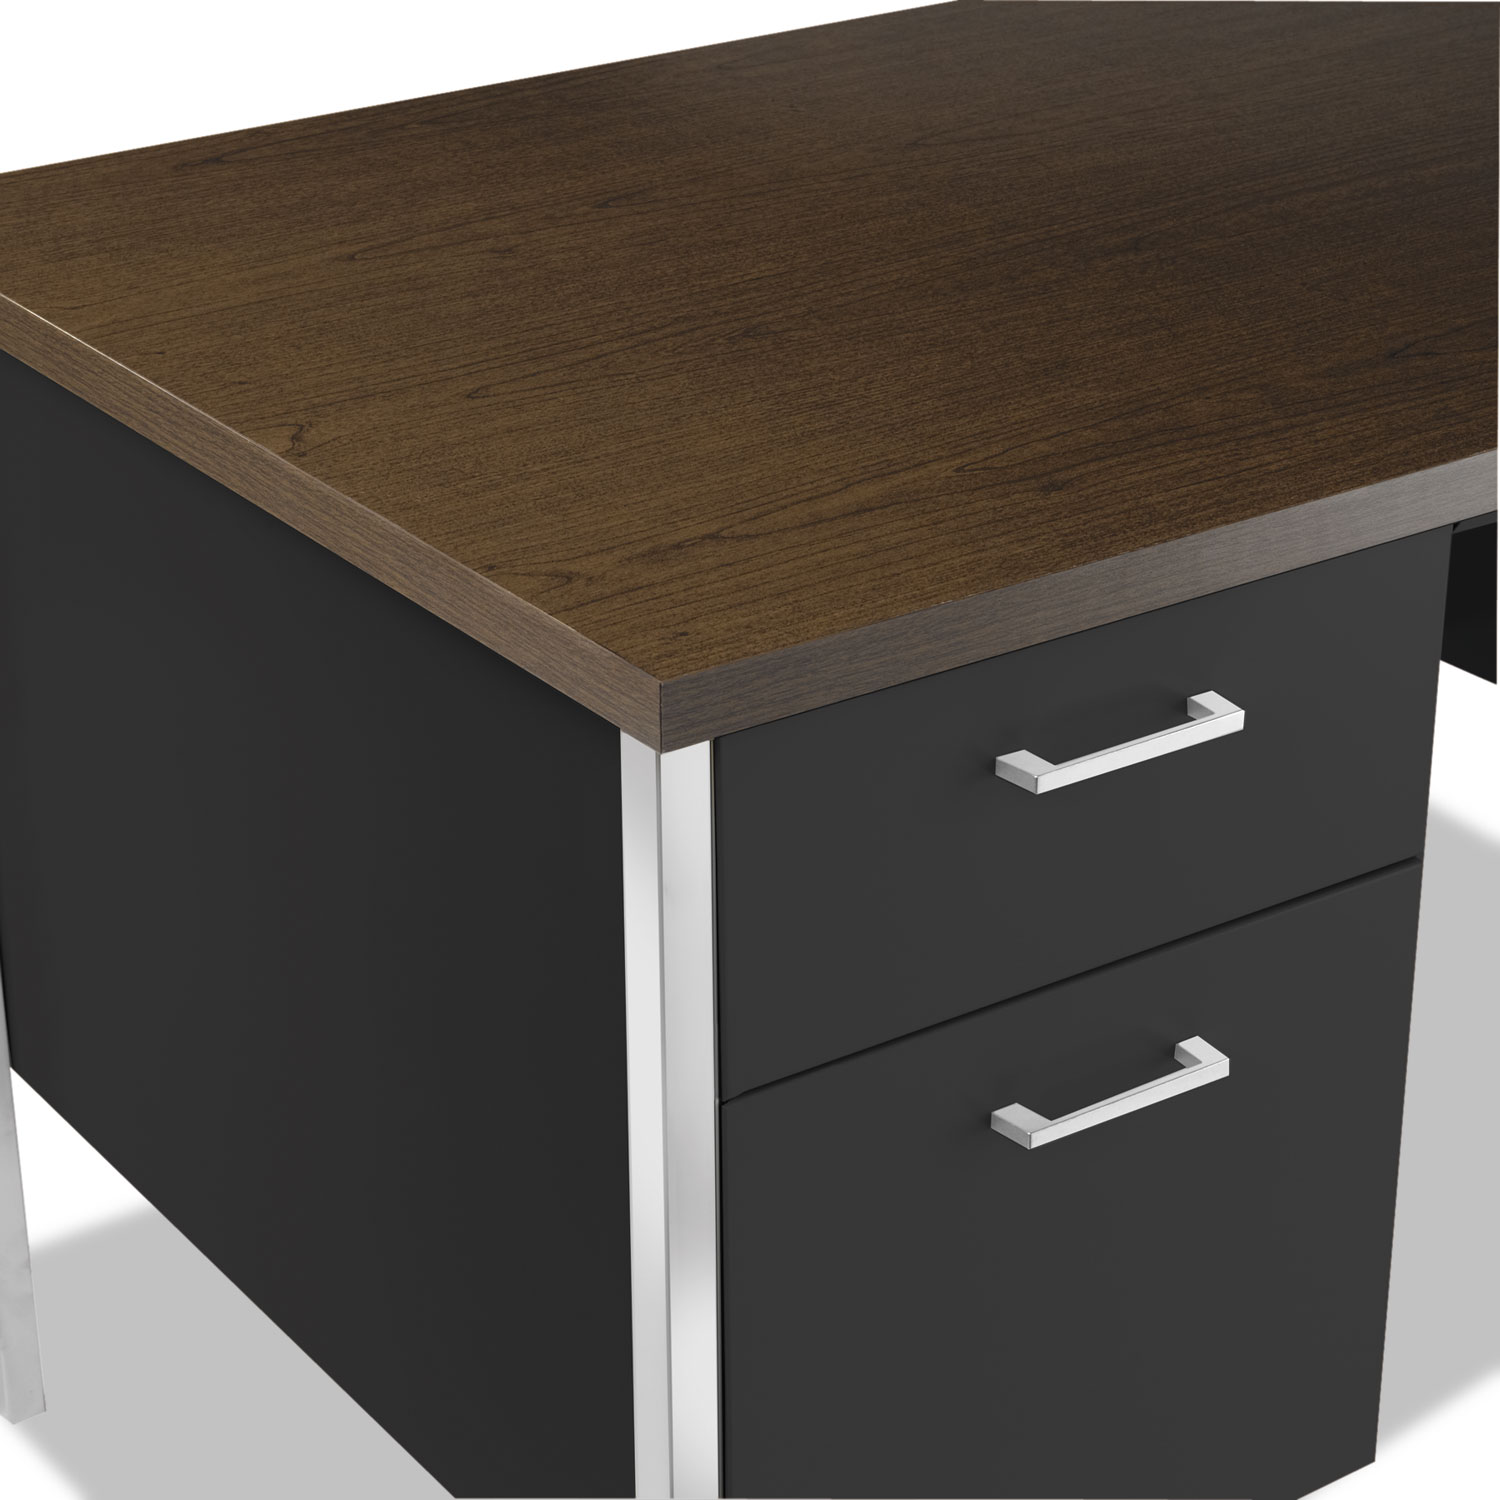 Double Pedestal Steel Desk, Metal Desk, 60w x 30d x 29-1/2h, Mocha/Black